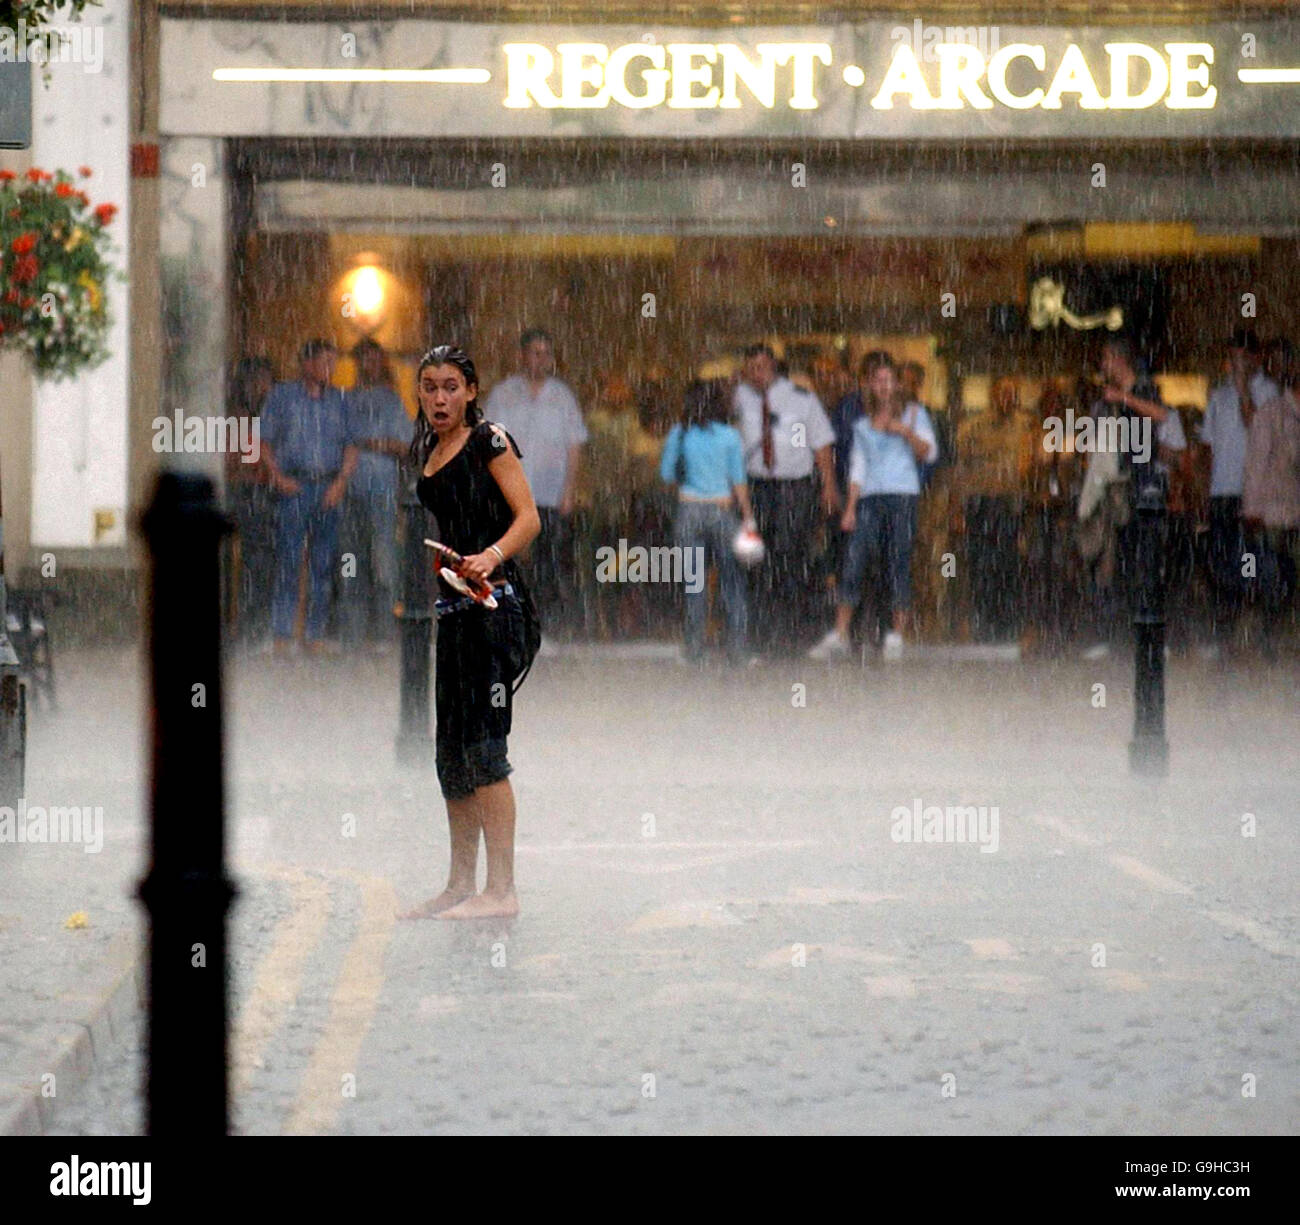 Ein Shopper wird im Regenguss gefangen, während andere im Zentrum von Cheltenham, Gloucestershire, Zuflucht suchen. Stockfoto